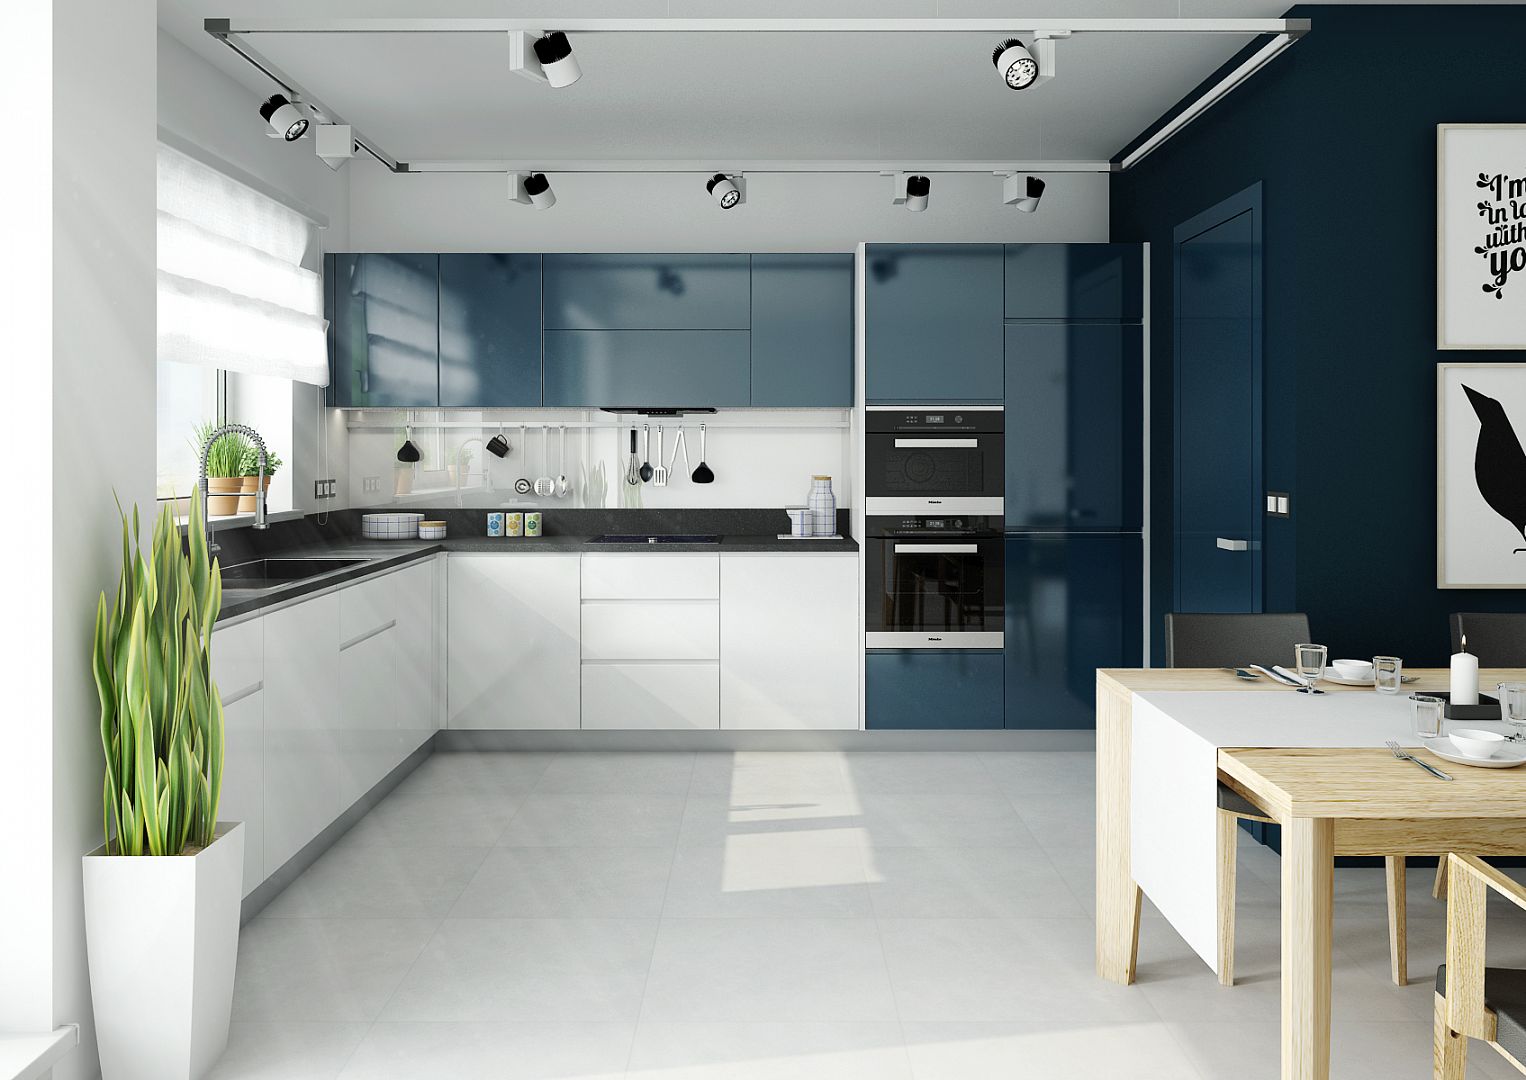 Lakovaná moderní kuchyně v modré barvě